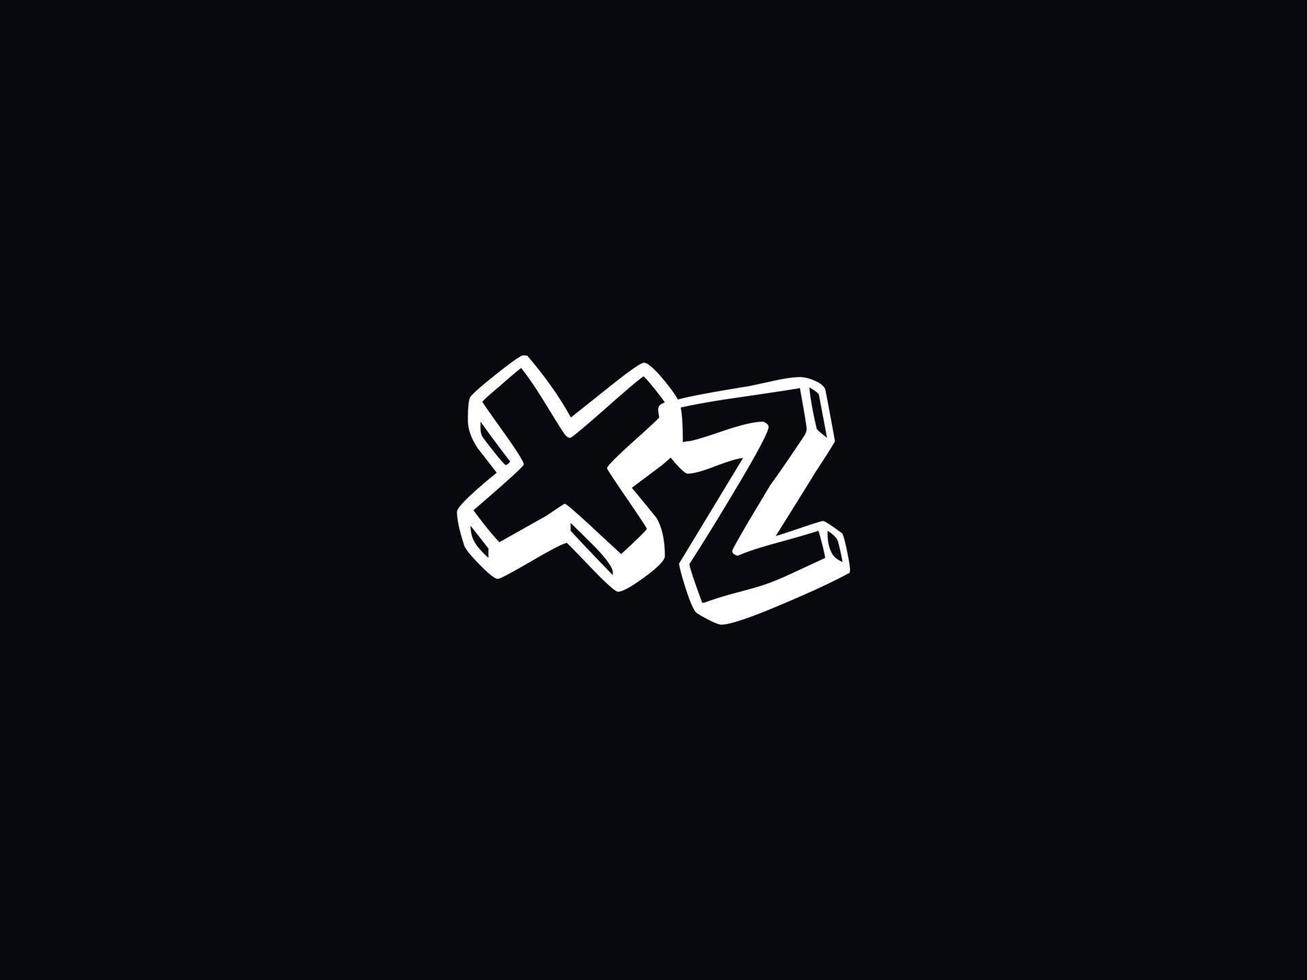 Monogramm xz Logo Brief, minimal xz bunt Logo Design vektor